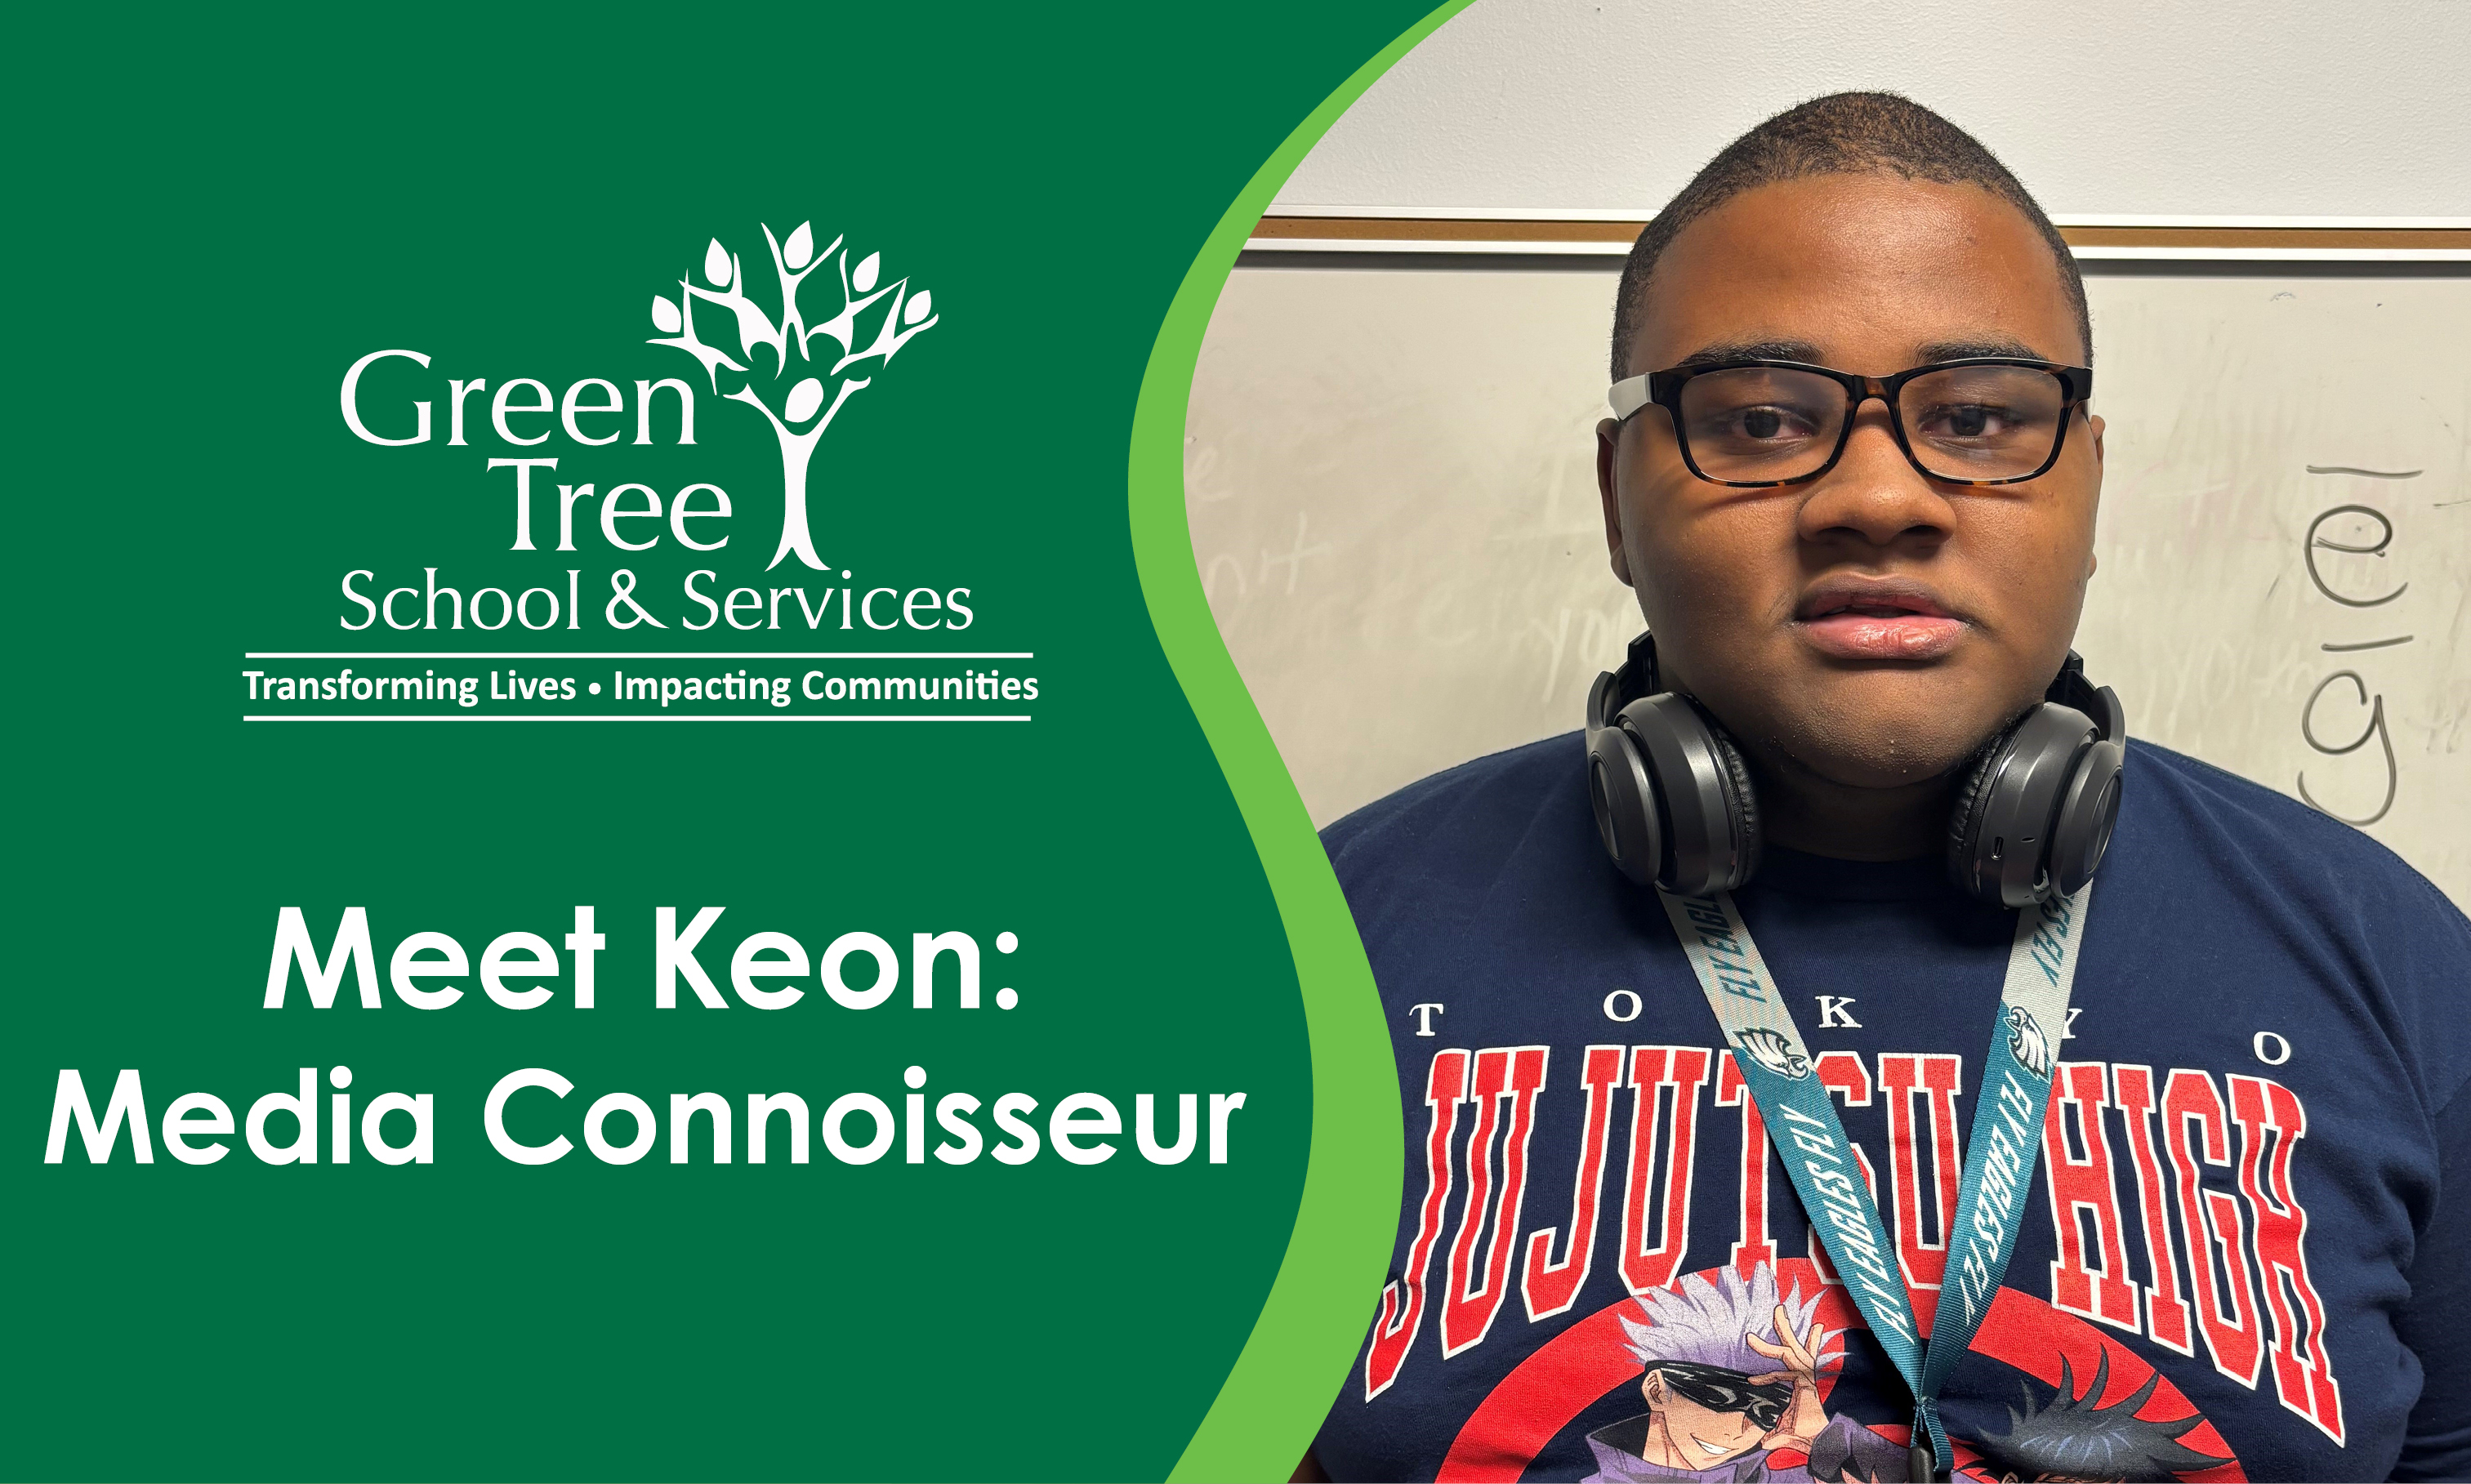 Meet Keon: Media Connoisseur